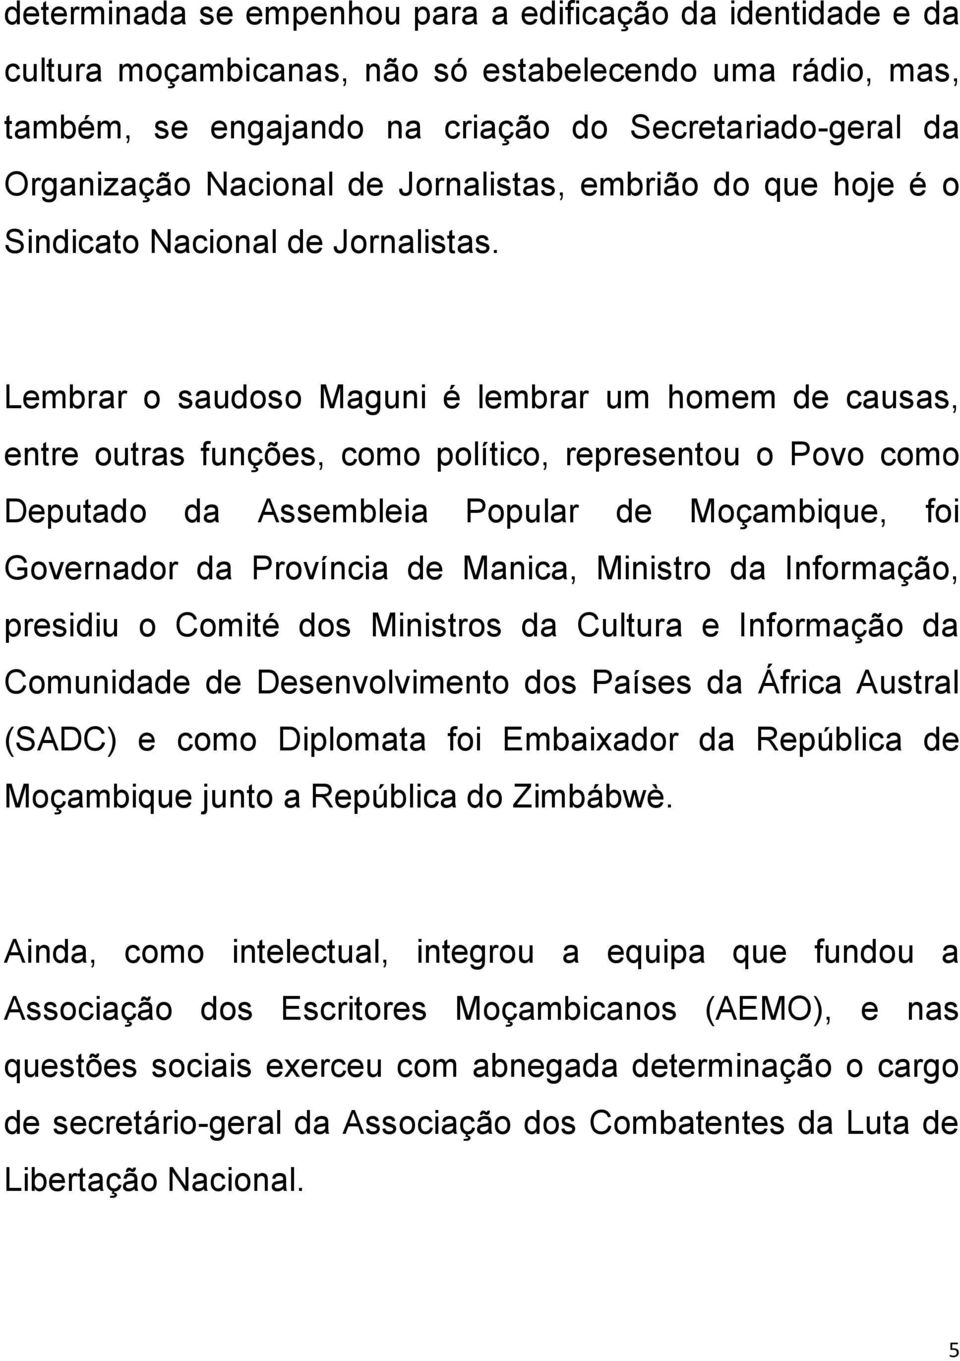 Lembrar o saudoso Maguni é lembrar um homem de causas, entre outras funções, como político, representou o Povo como Deputado da Assembleia Popular de Moçambique, foi Governador da Província de